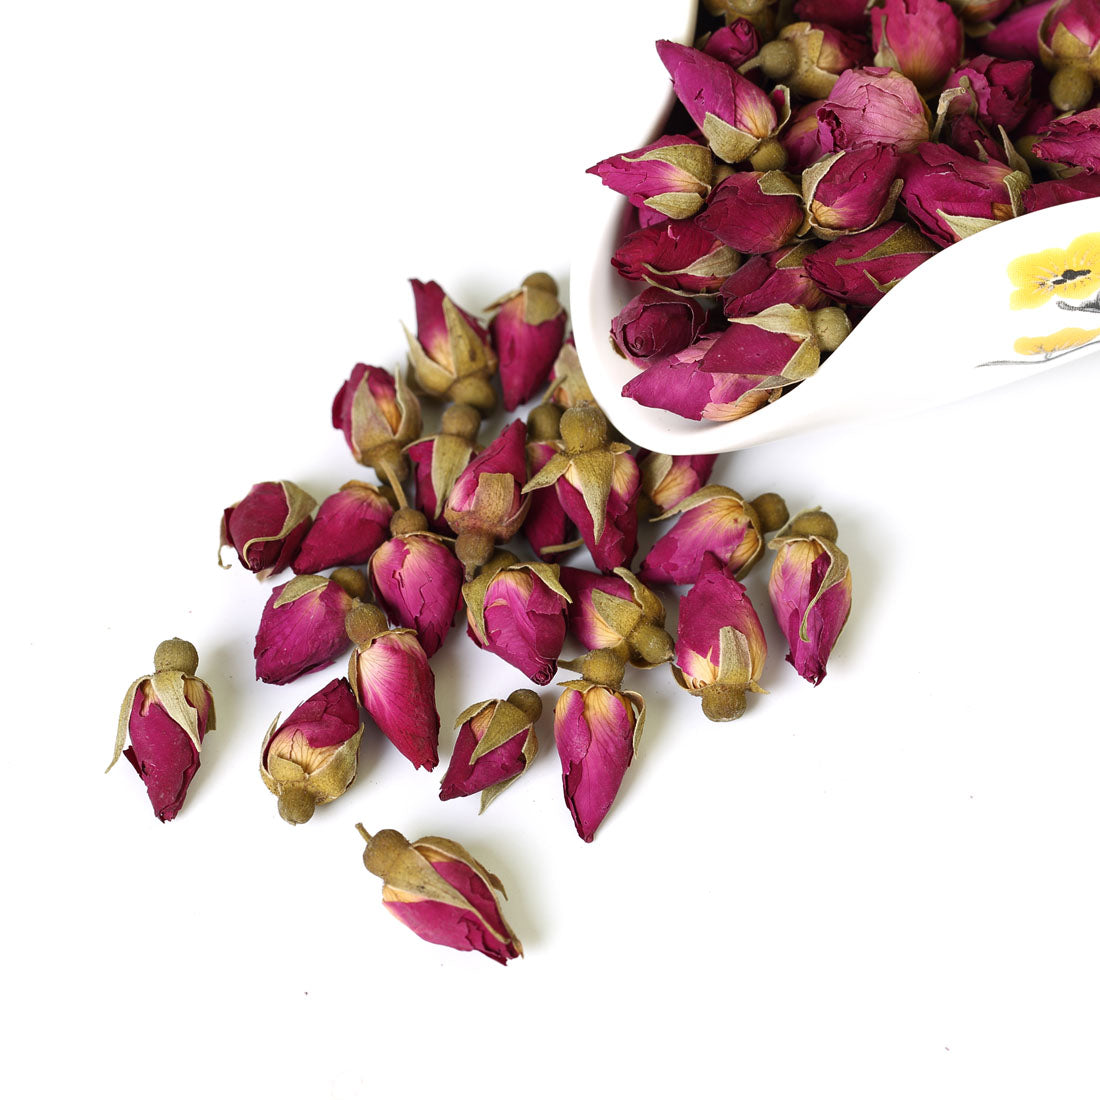 1 oz EDIBLE PINK ROSE PETALS Tea Dried Flowers Bud Flower